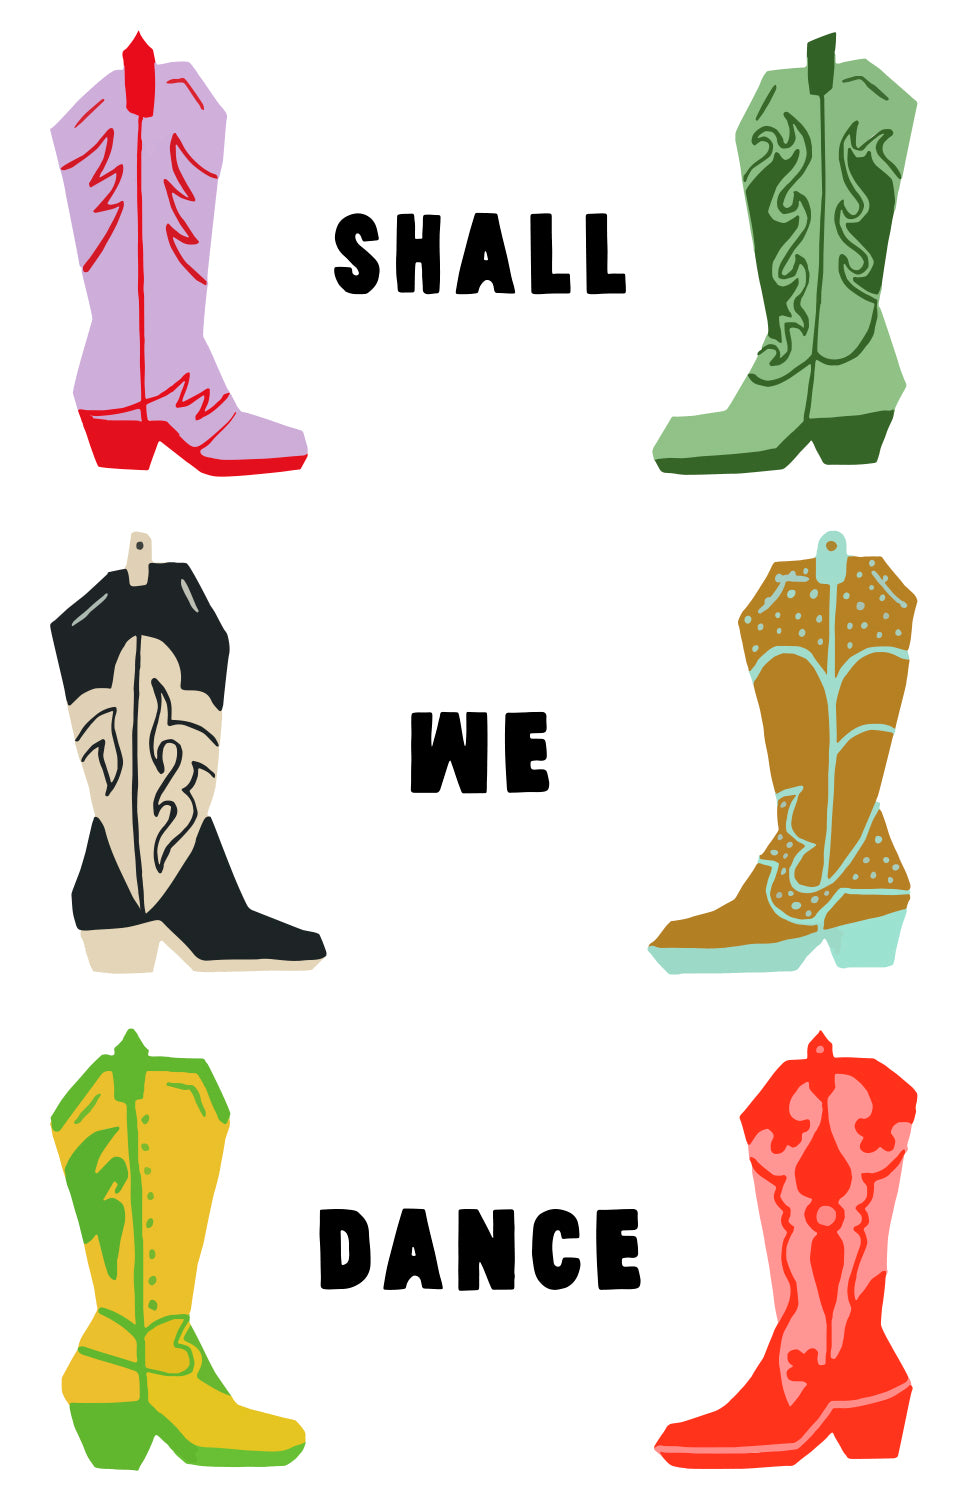 SHALL WE DANCE